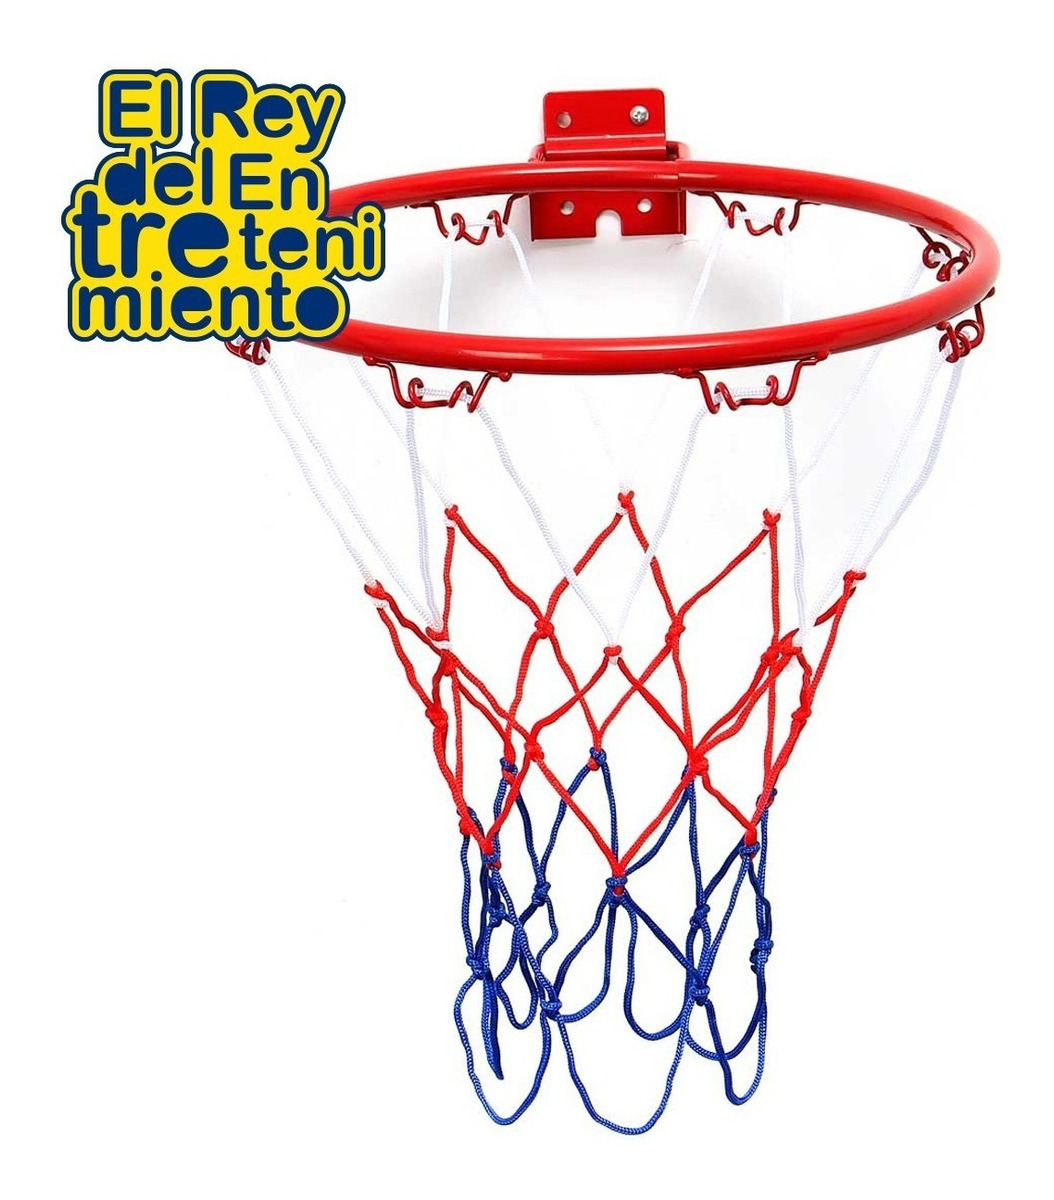 Red P/ Aro De Basketball Nylon Super Resistente Nº1 - El Rey - $ 199,00